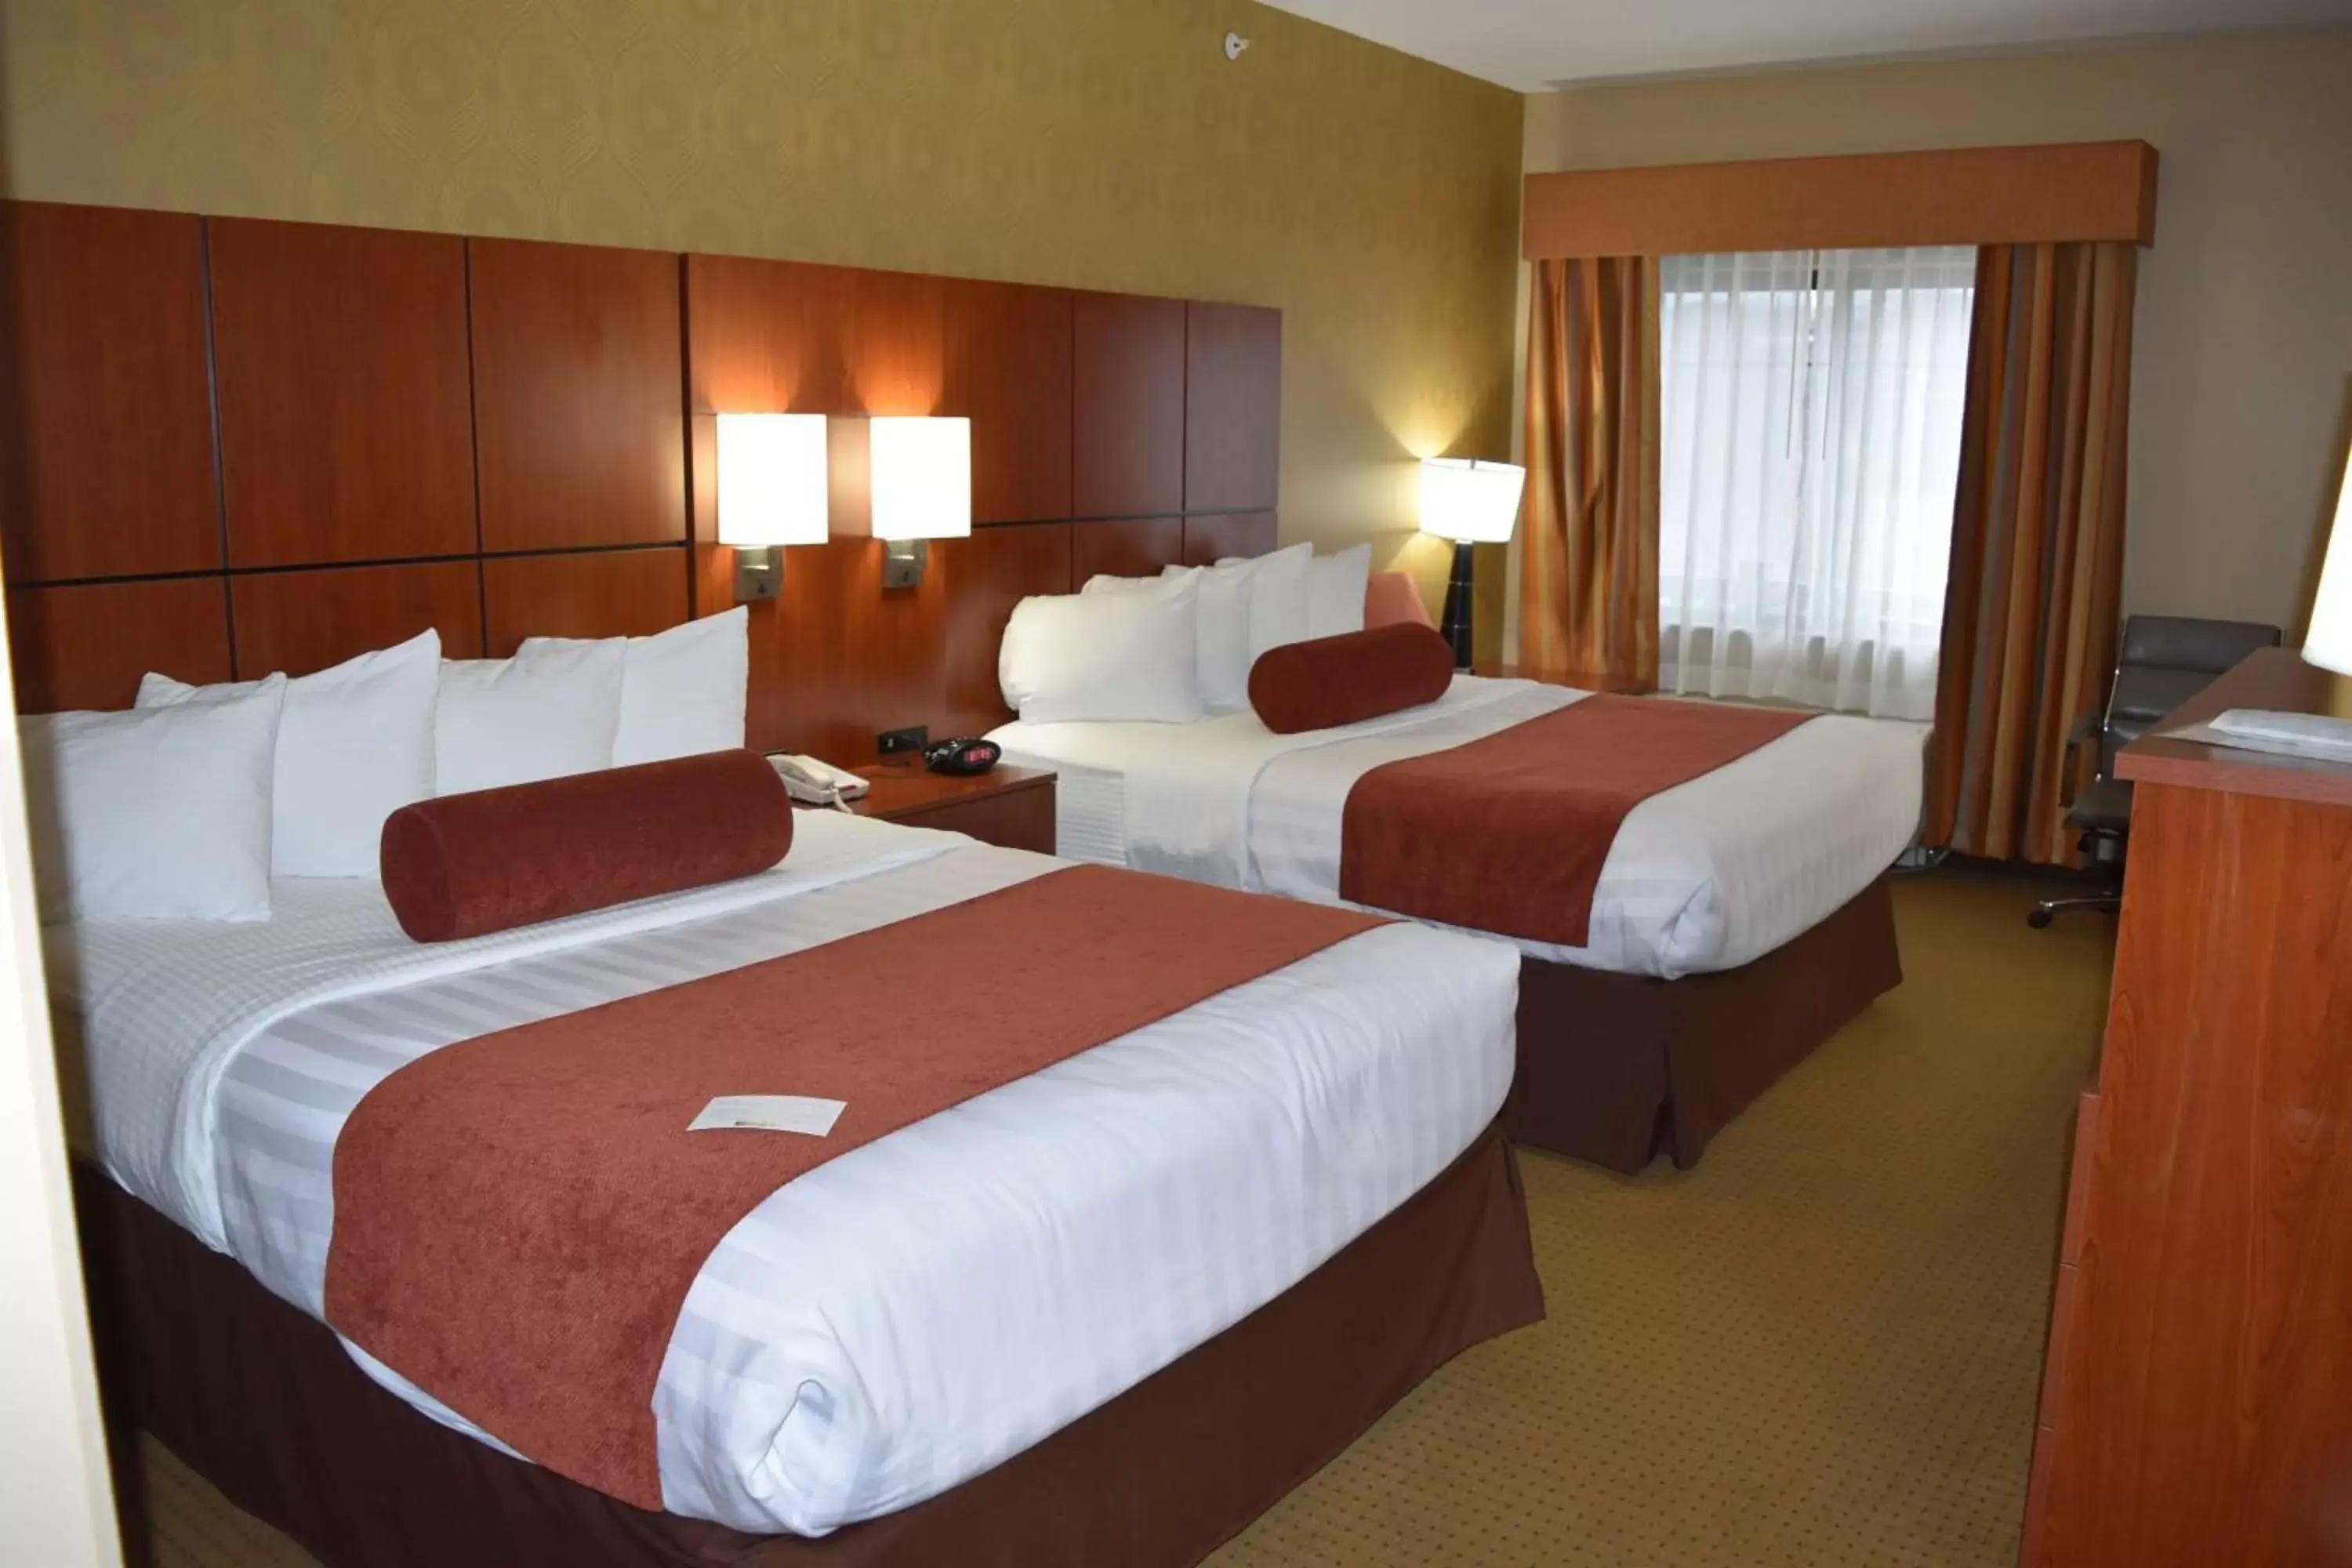 Bedroom, Bed in Best Western Plus Finger Lakes Inn & Suites